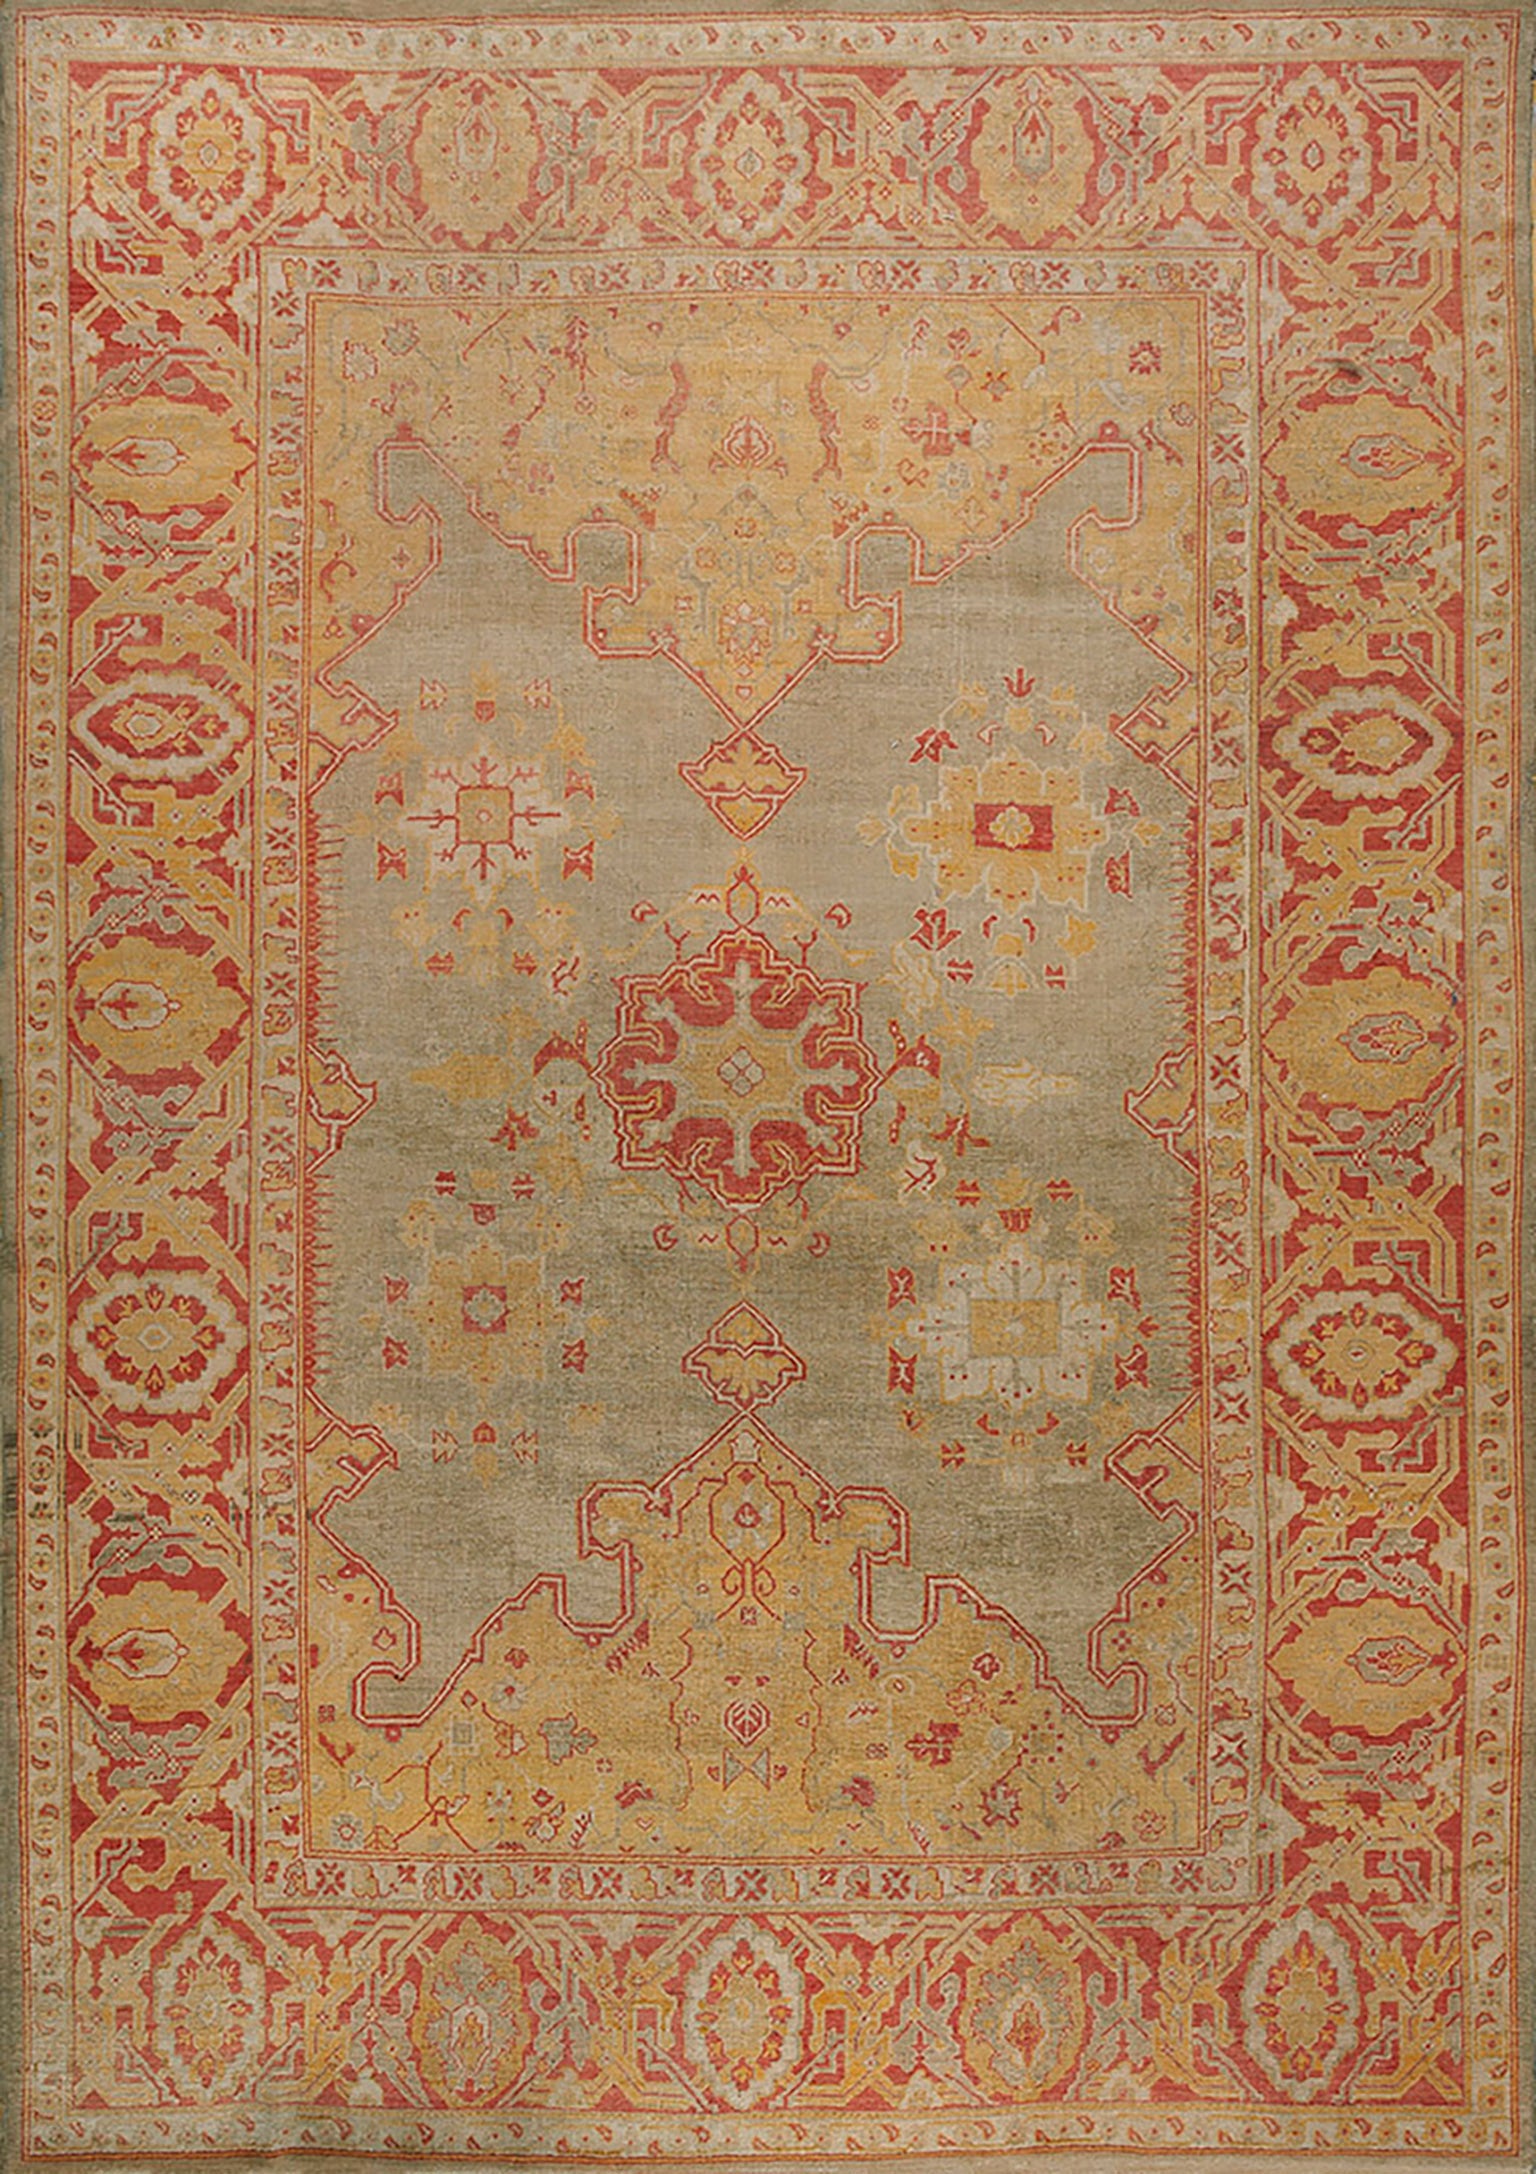 Türkischer Oushak-Teppich des 19. Jahrhunderts ( 10' x 13'6" - 305 x 412")